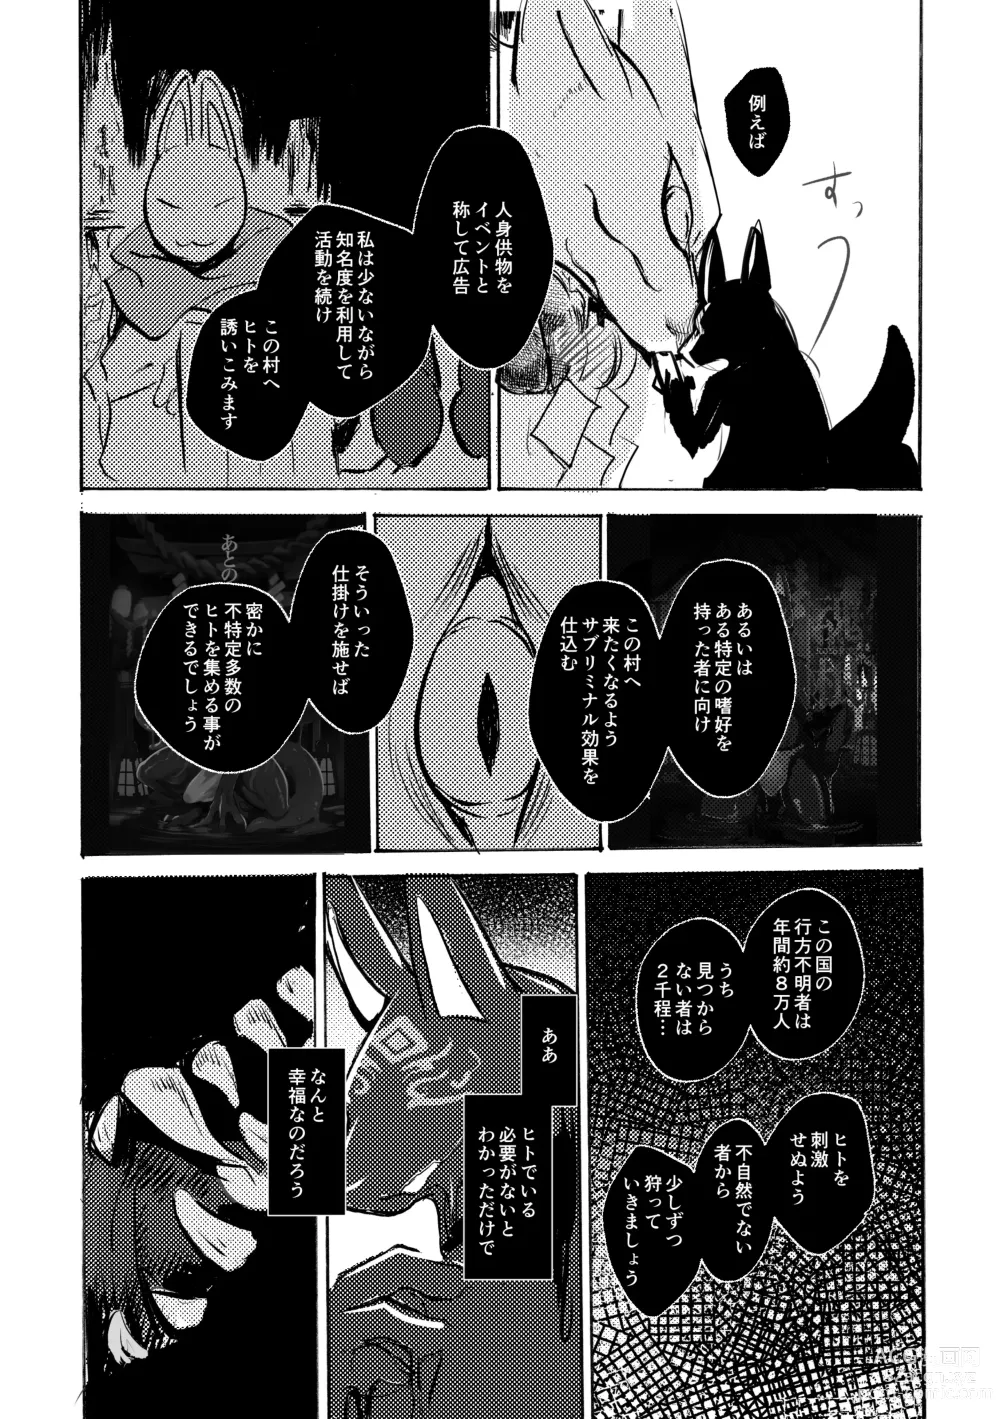 Page 34 of doujinshi Ato no Matsuri